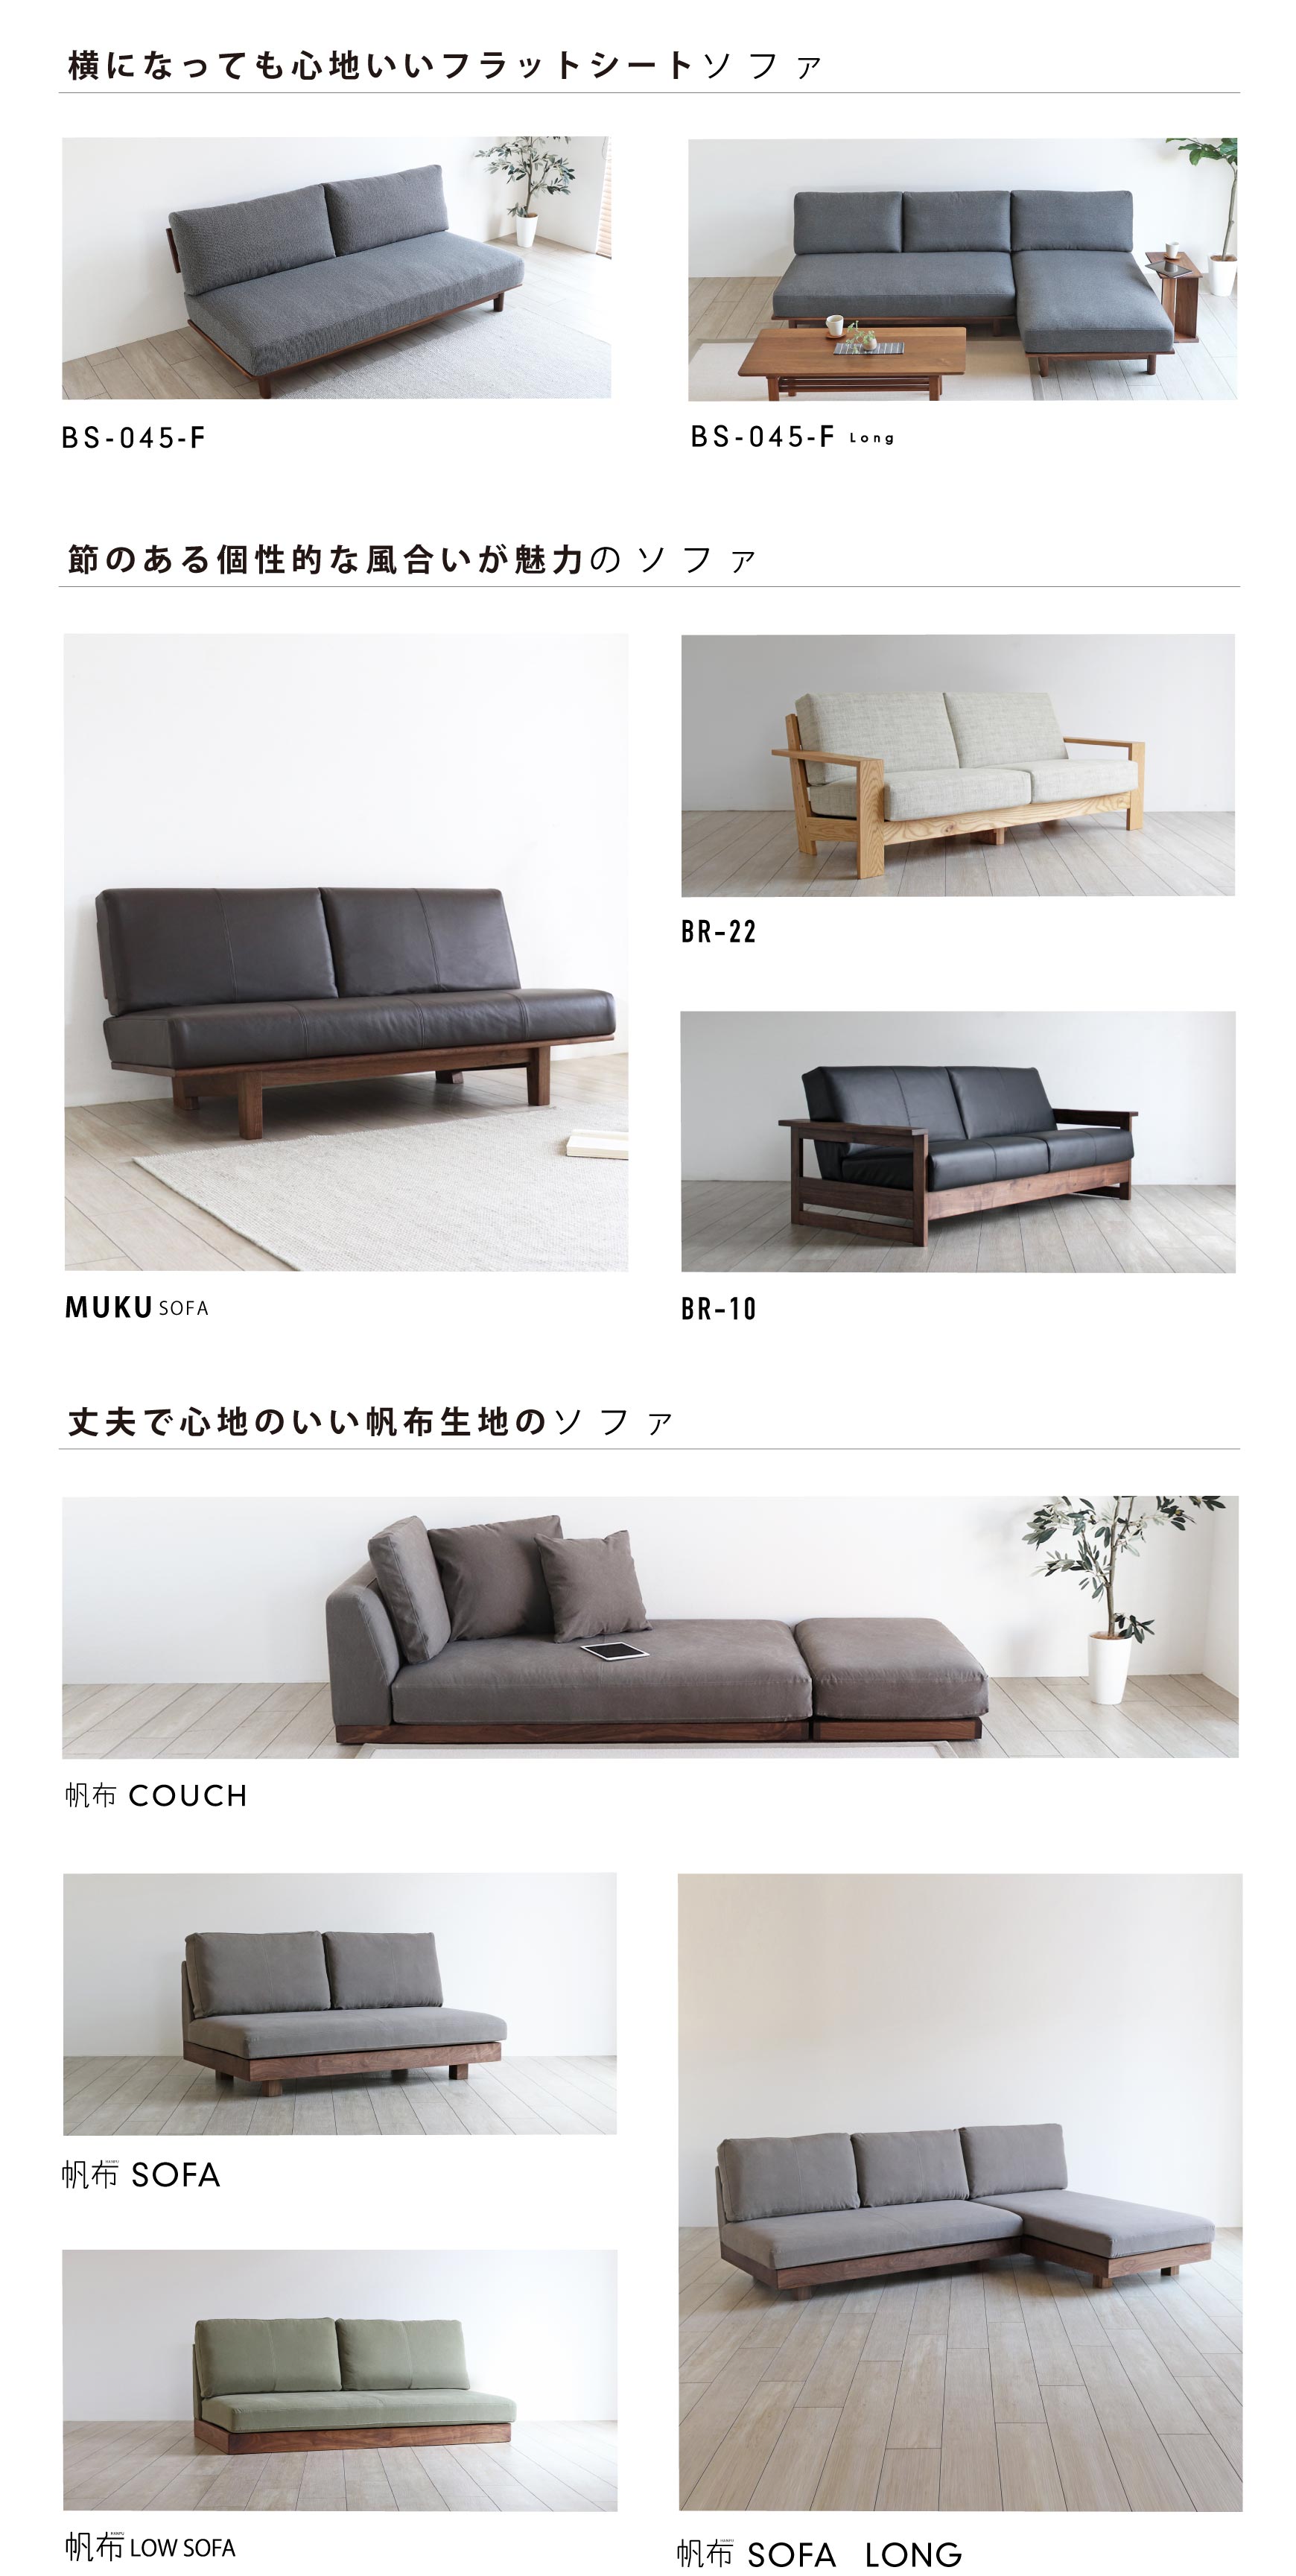 日本の職人が丁寧につくり上げる上質なソファ・リビングテーブル